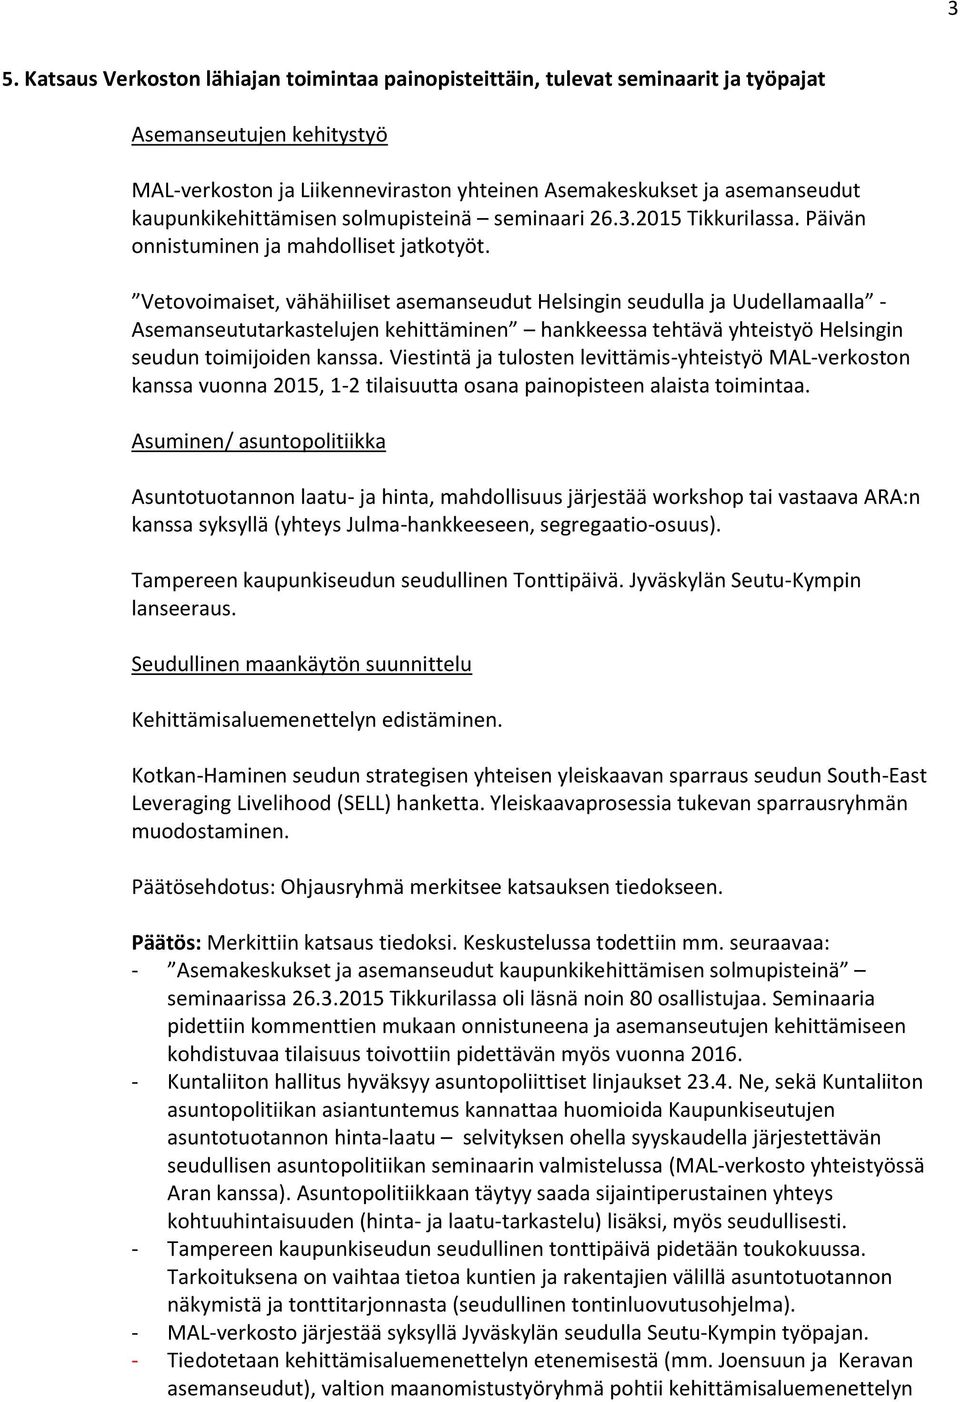 Vetovoimaiset, vähähiiliset asemanseudut Helsingin seudulla ja Uudellamaalla - Asemanseututarkastelujen kehittäminen hankkeessa tehtävä yhteistyö Helsingin seudun toimijoiden kanssa.